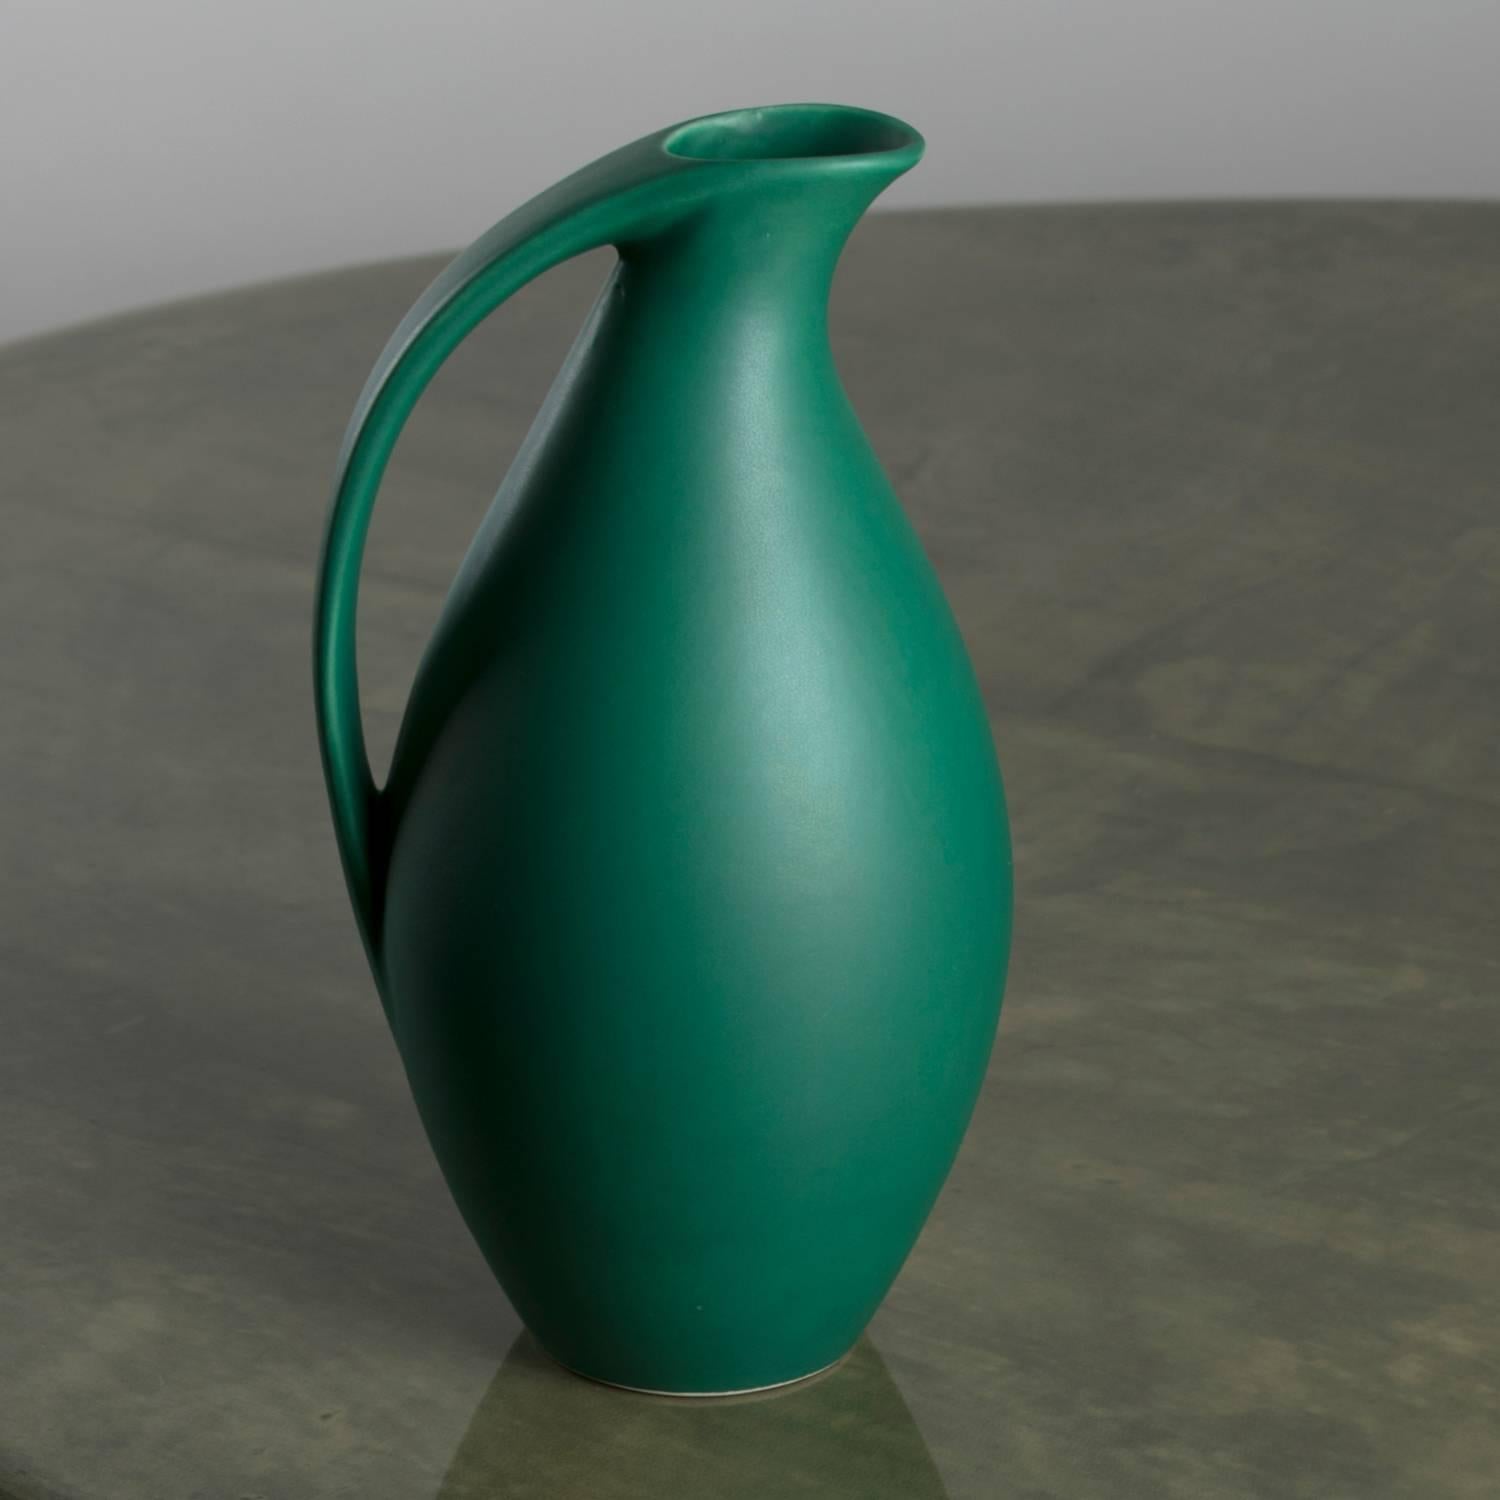 Zarte grüne italienische Vase aus den 1950er Jahren, hergestellt von Ernestine, Salerno.